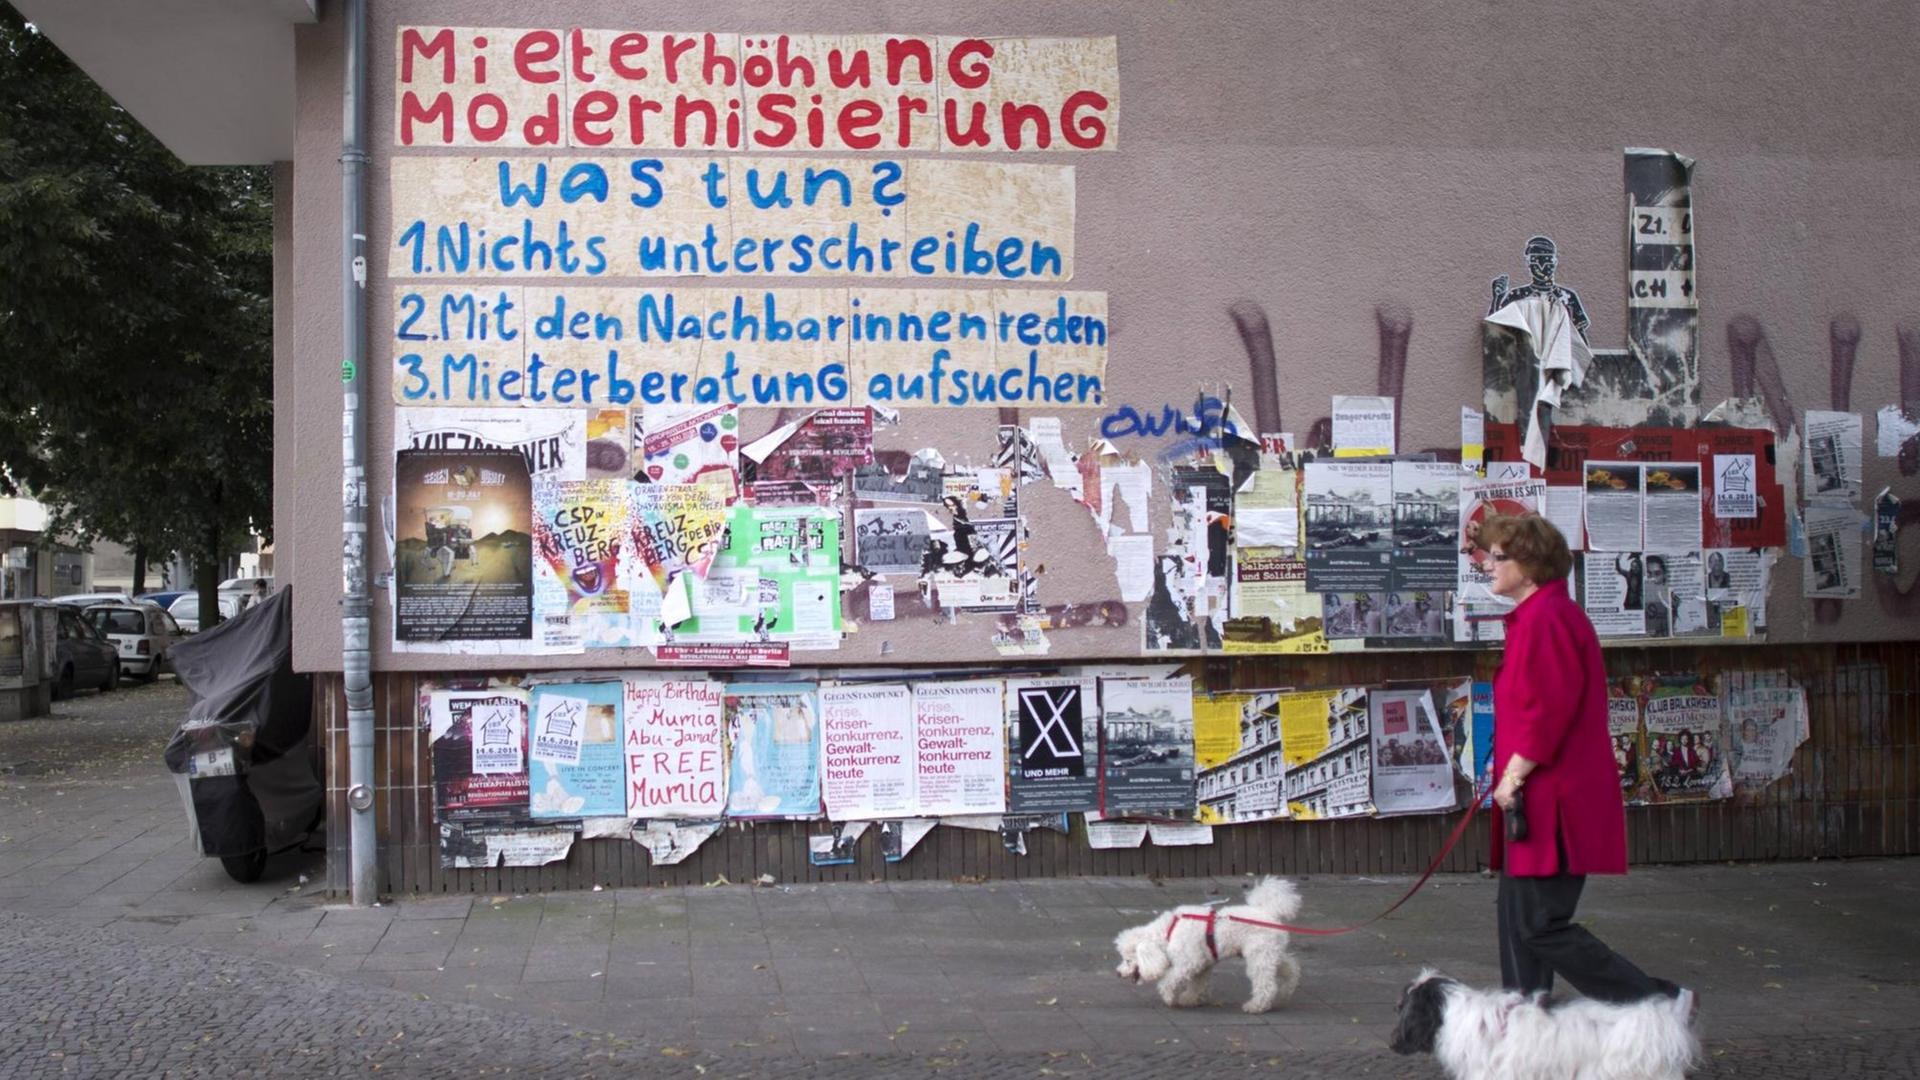 Graffiti an einer Hauswand: "Mieterhöhung, Modernisierung - was tun? 1. Nichts unterschreiben, 2. Mit Nachbarinnen reden, 3. Mieterberatung aufsuchen"